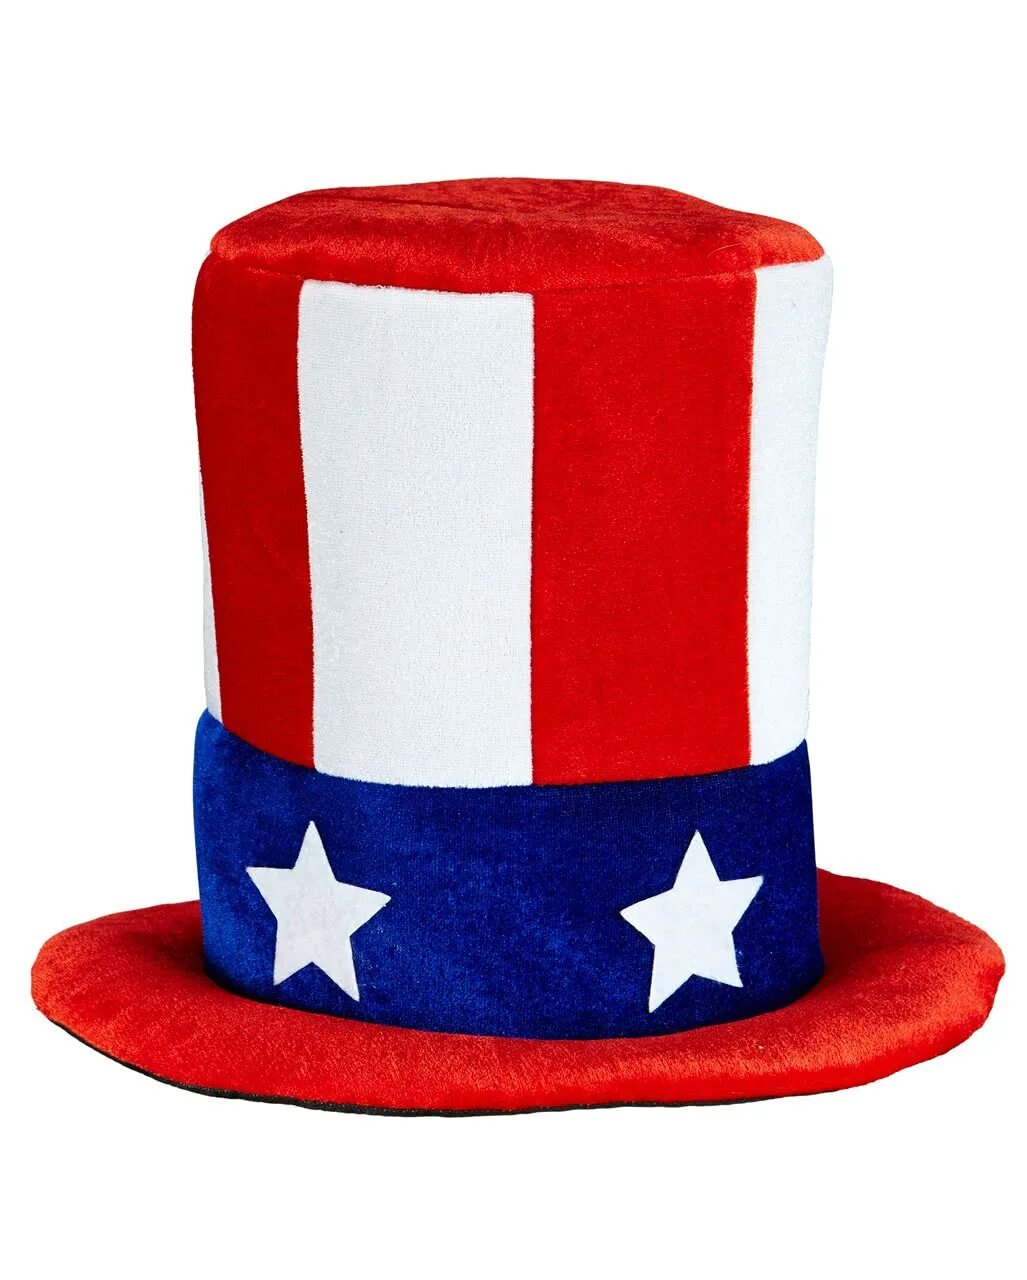 Американская шляпа. Американский цилиндр. Головные уборы Америки. Шляпка США. Шляпа америка